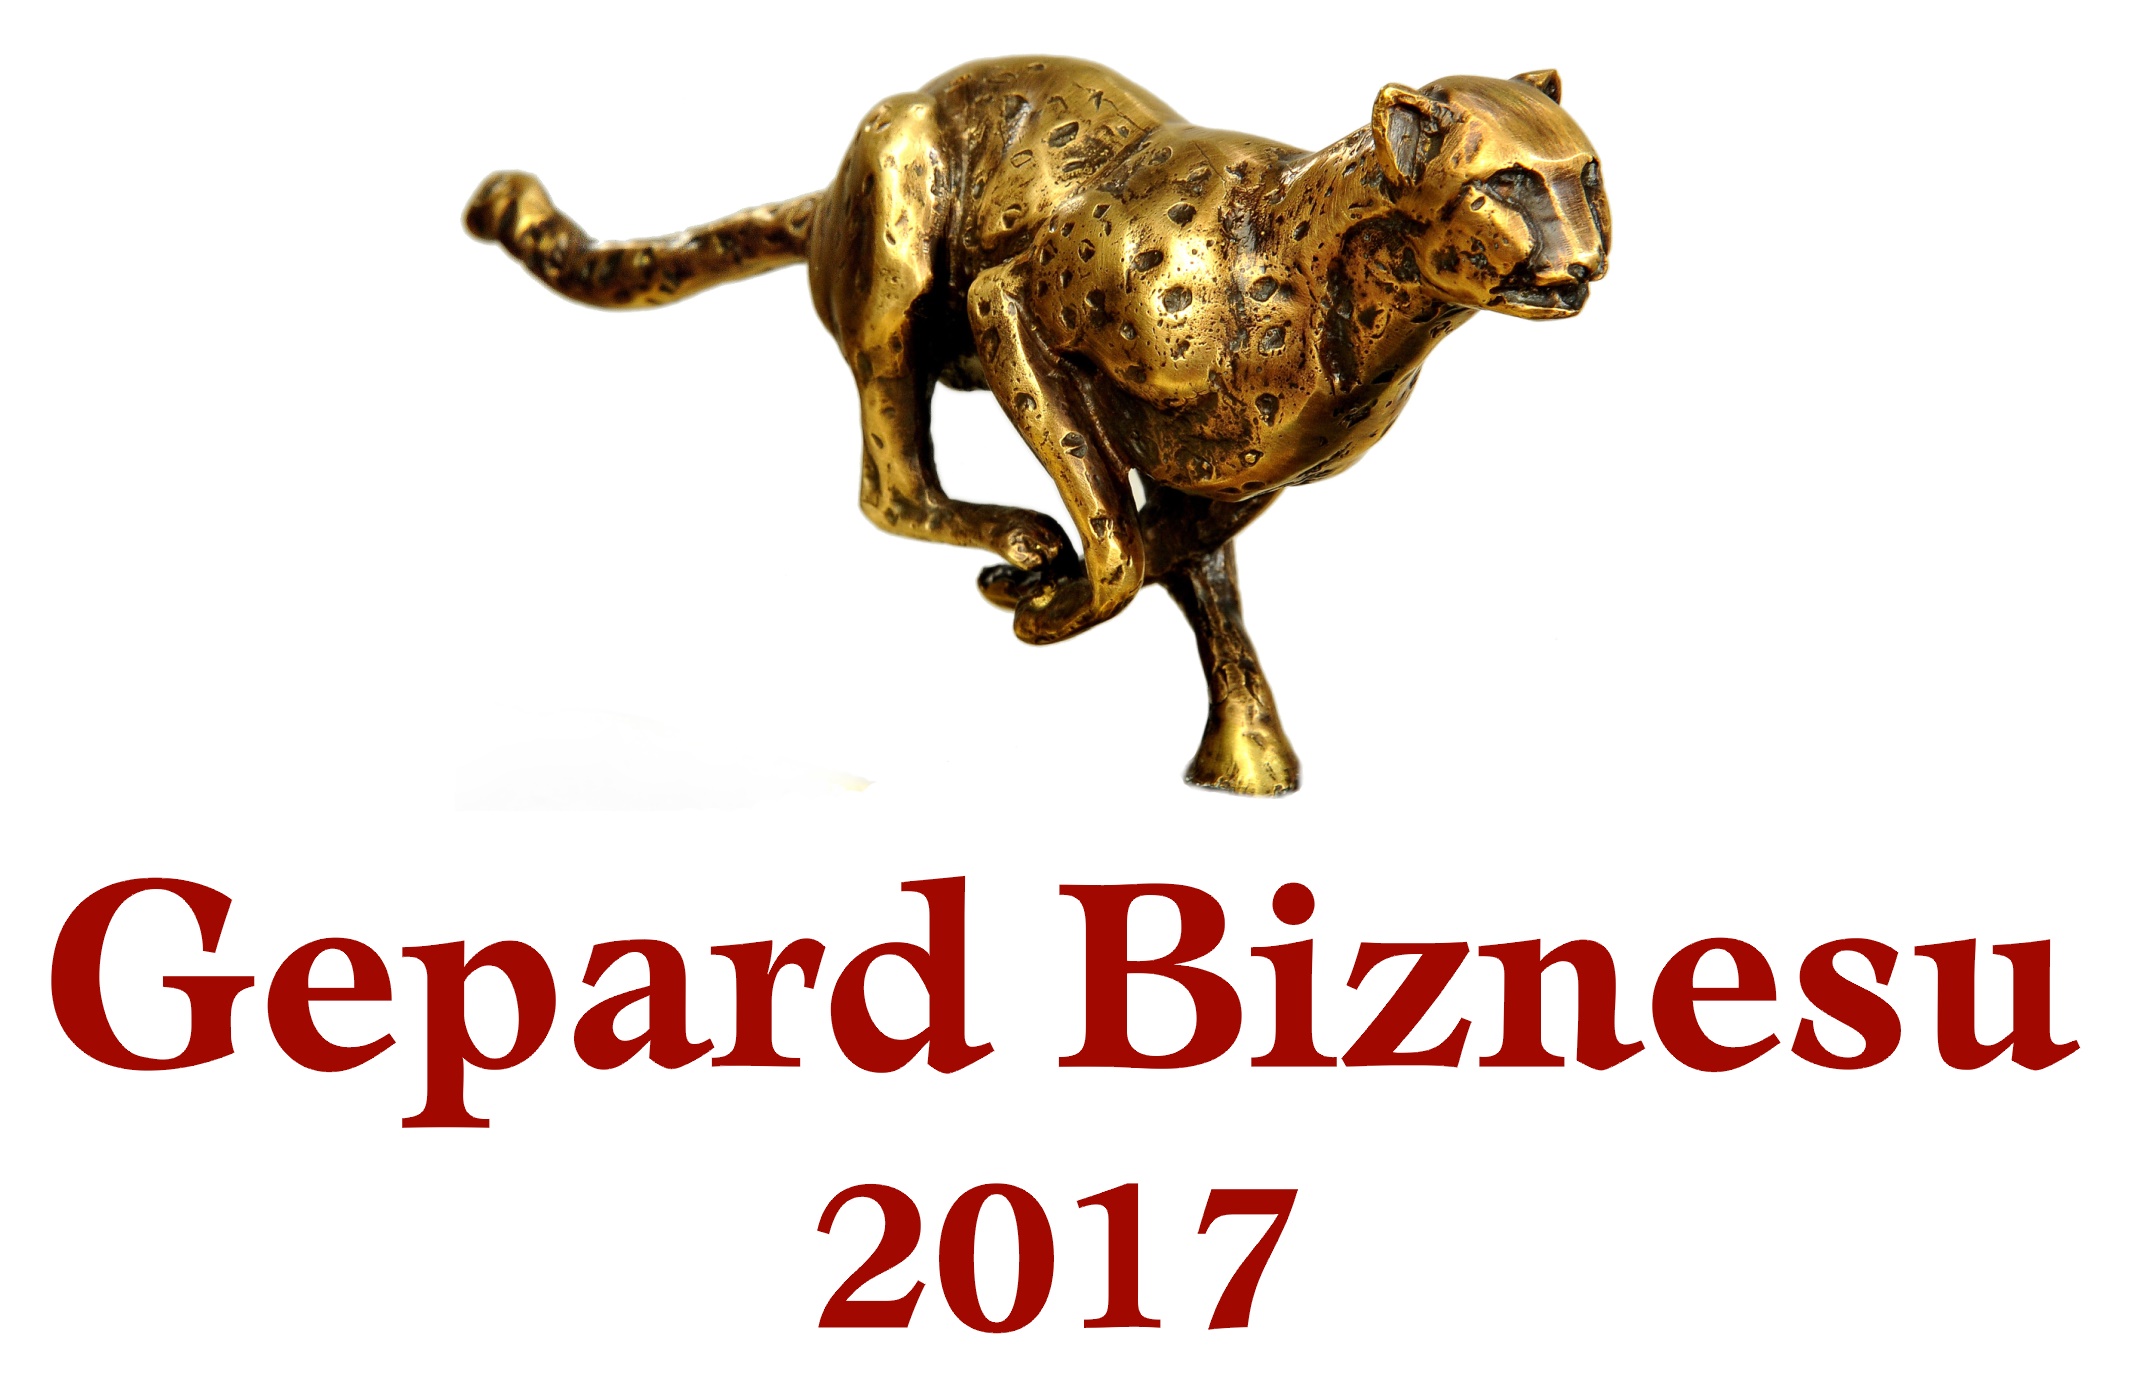 Gepardy Biznesu 2017